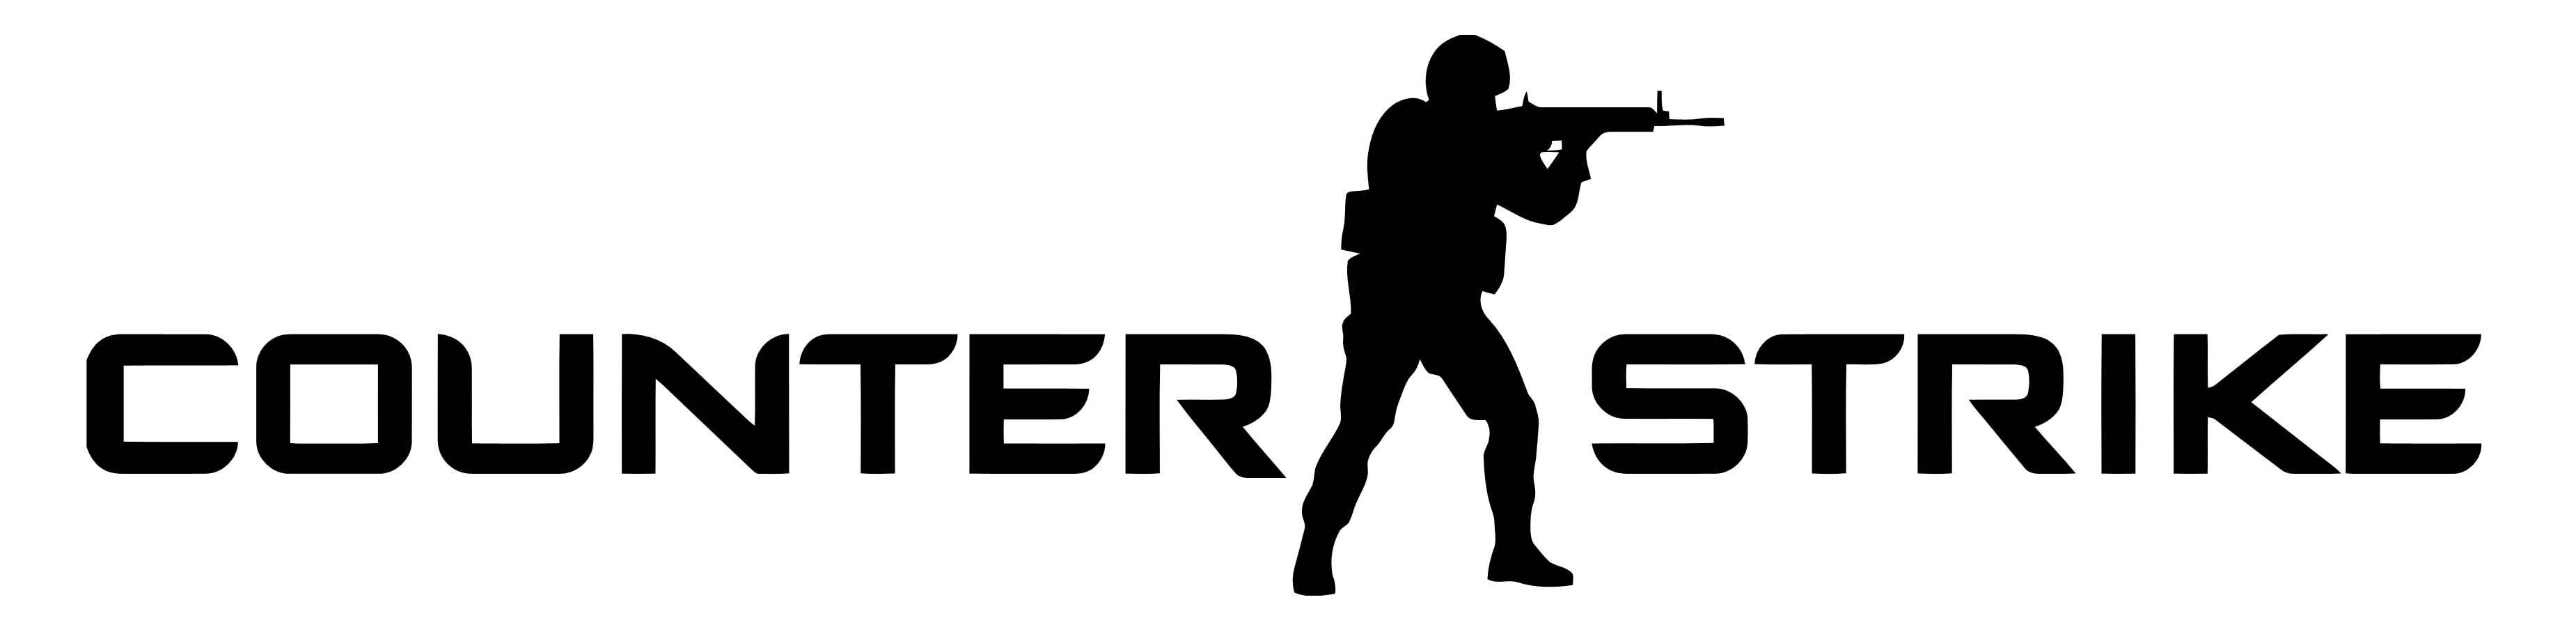 Counter Strike logo, logotype